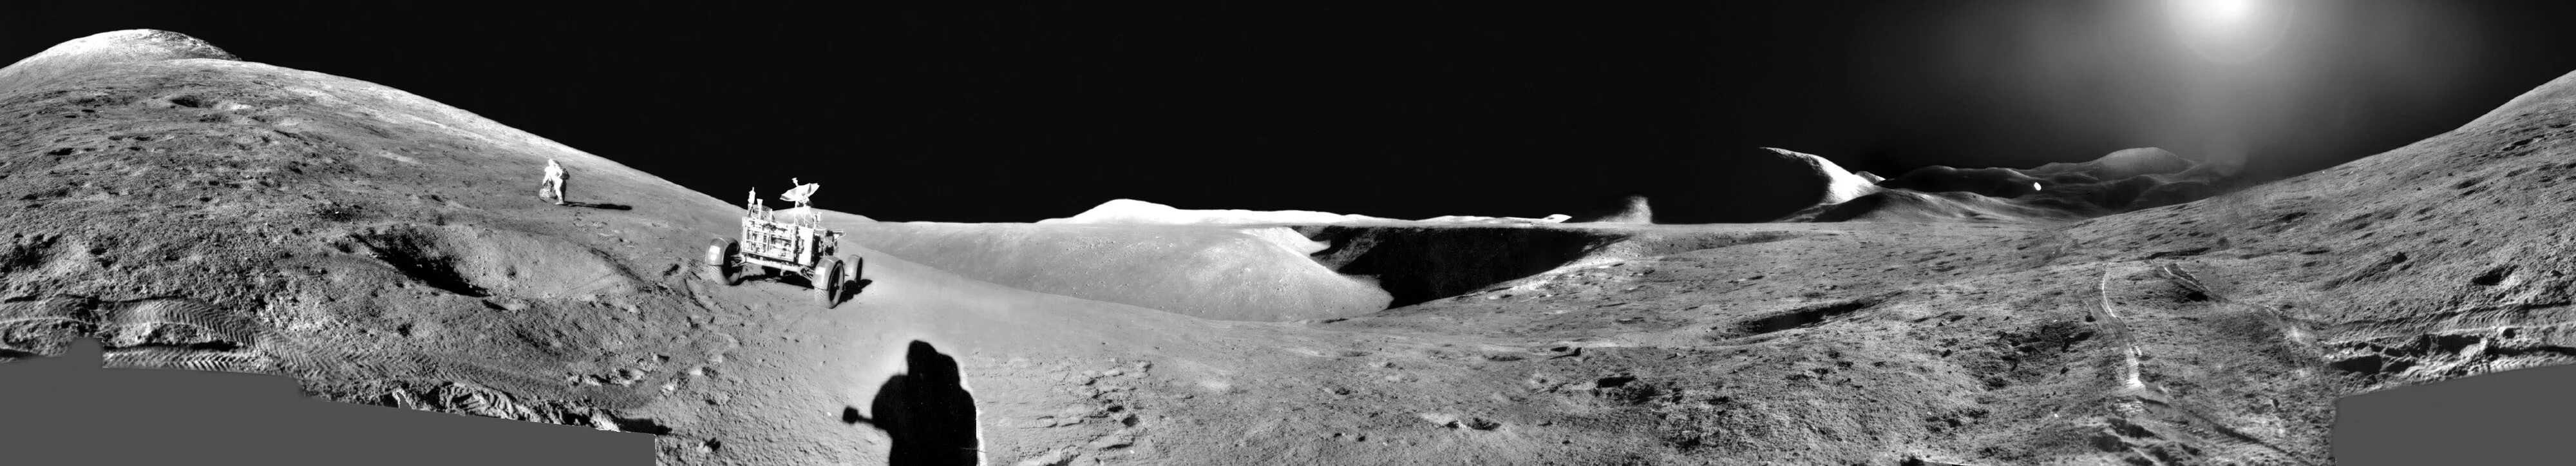 Аполлон 11 панорама Луны. Аполлон 15. Луноход Аполлон 15. Аполлон 15 на Луне. Стоя на поверхности луны